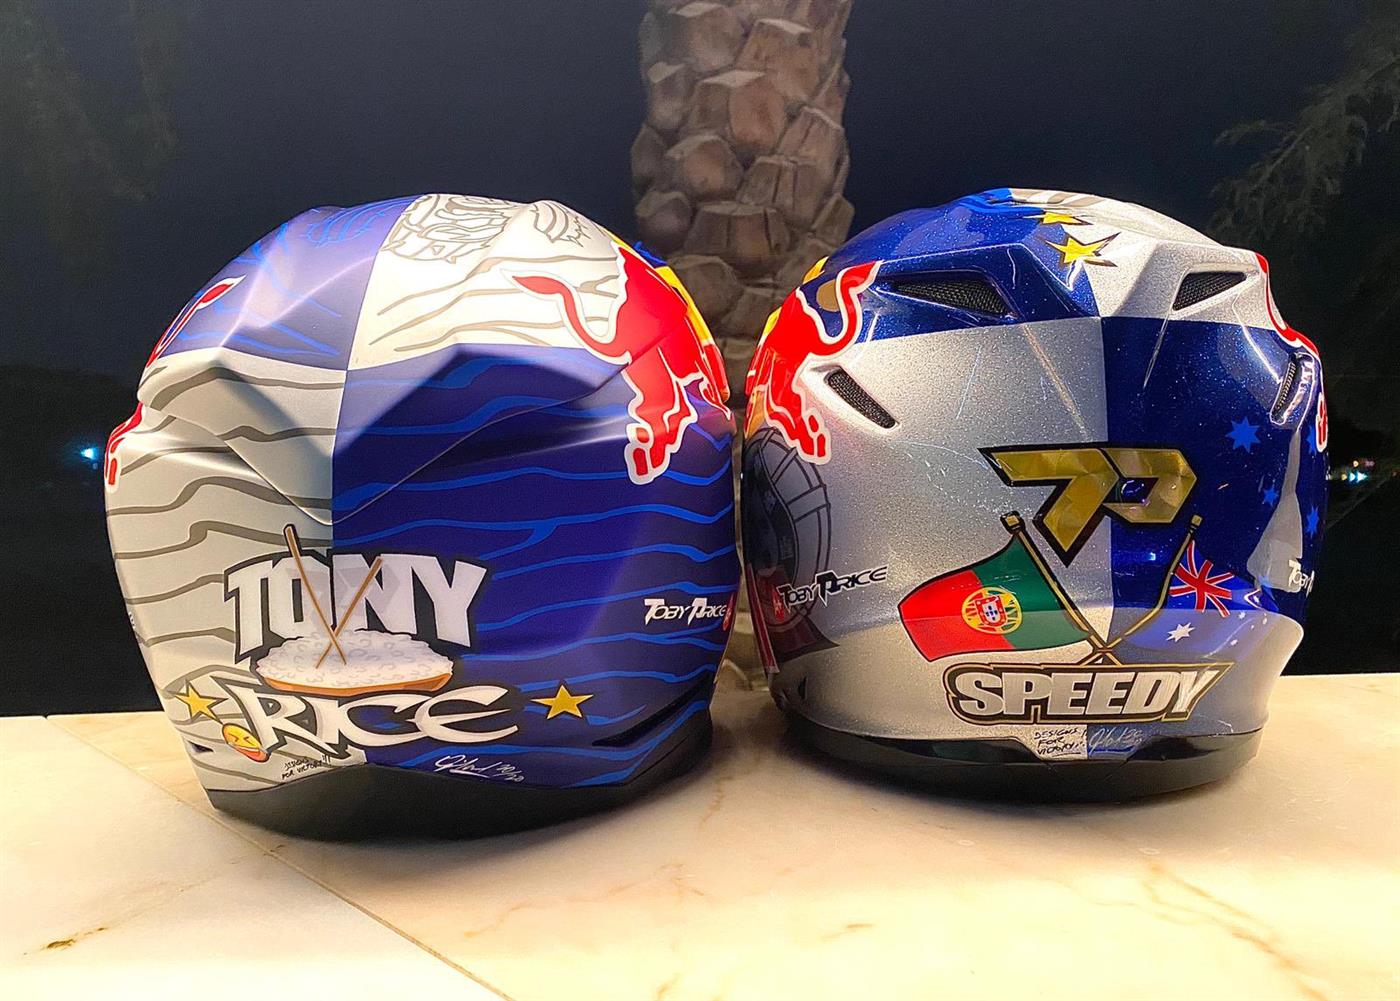 Price corre no Dakar com capacete de homenagem a Paulo Gonçalves